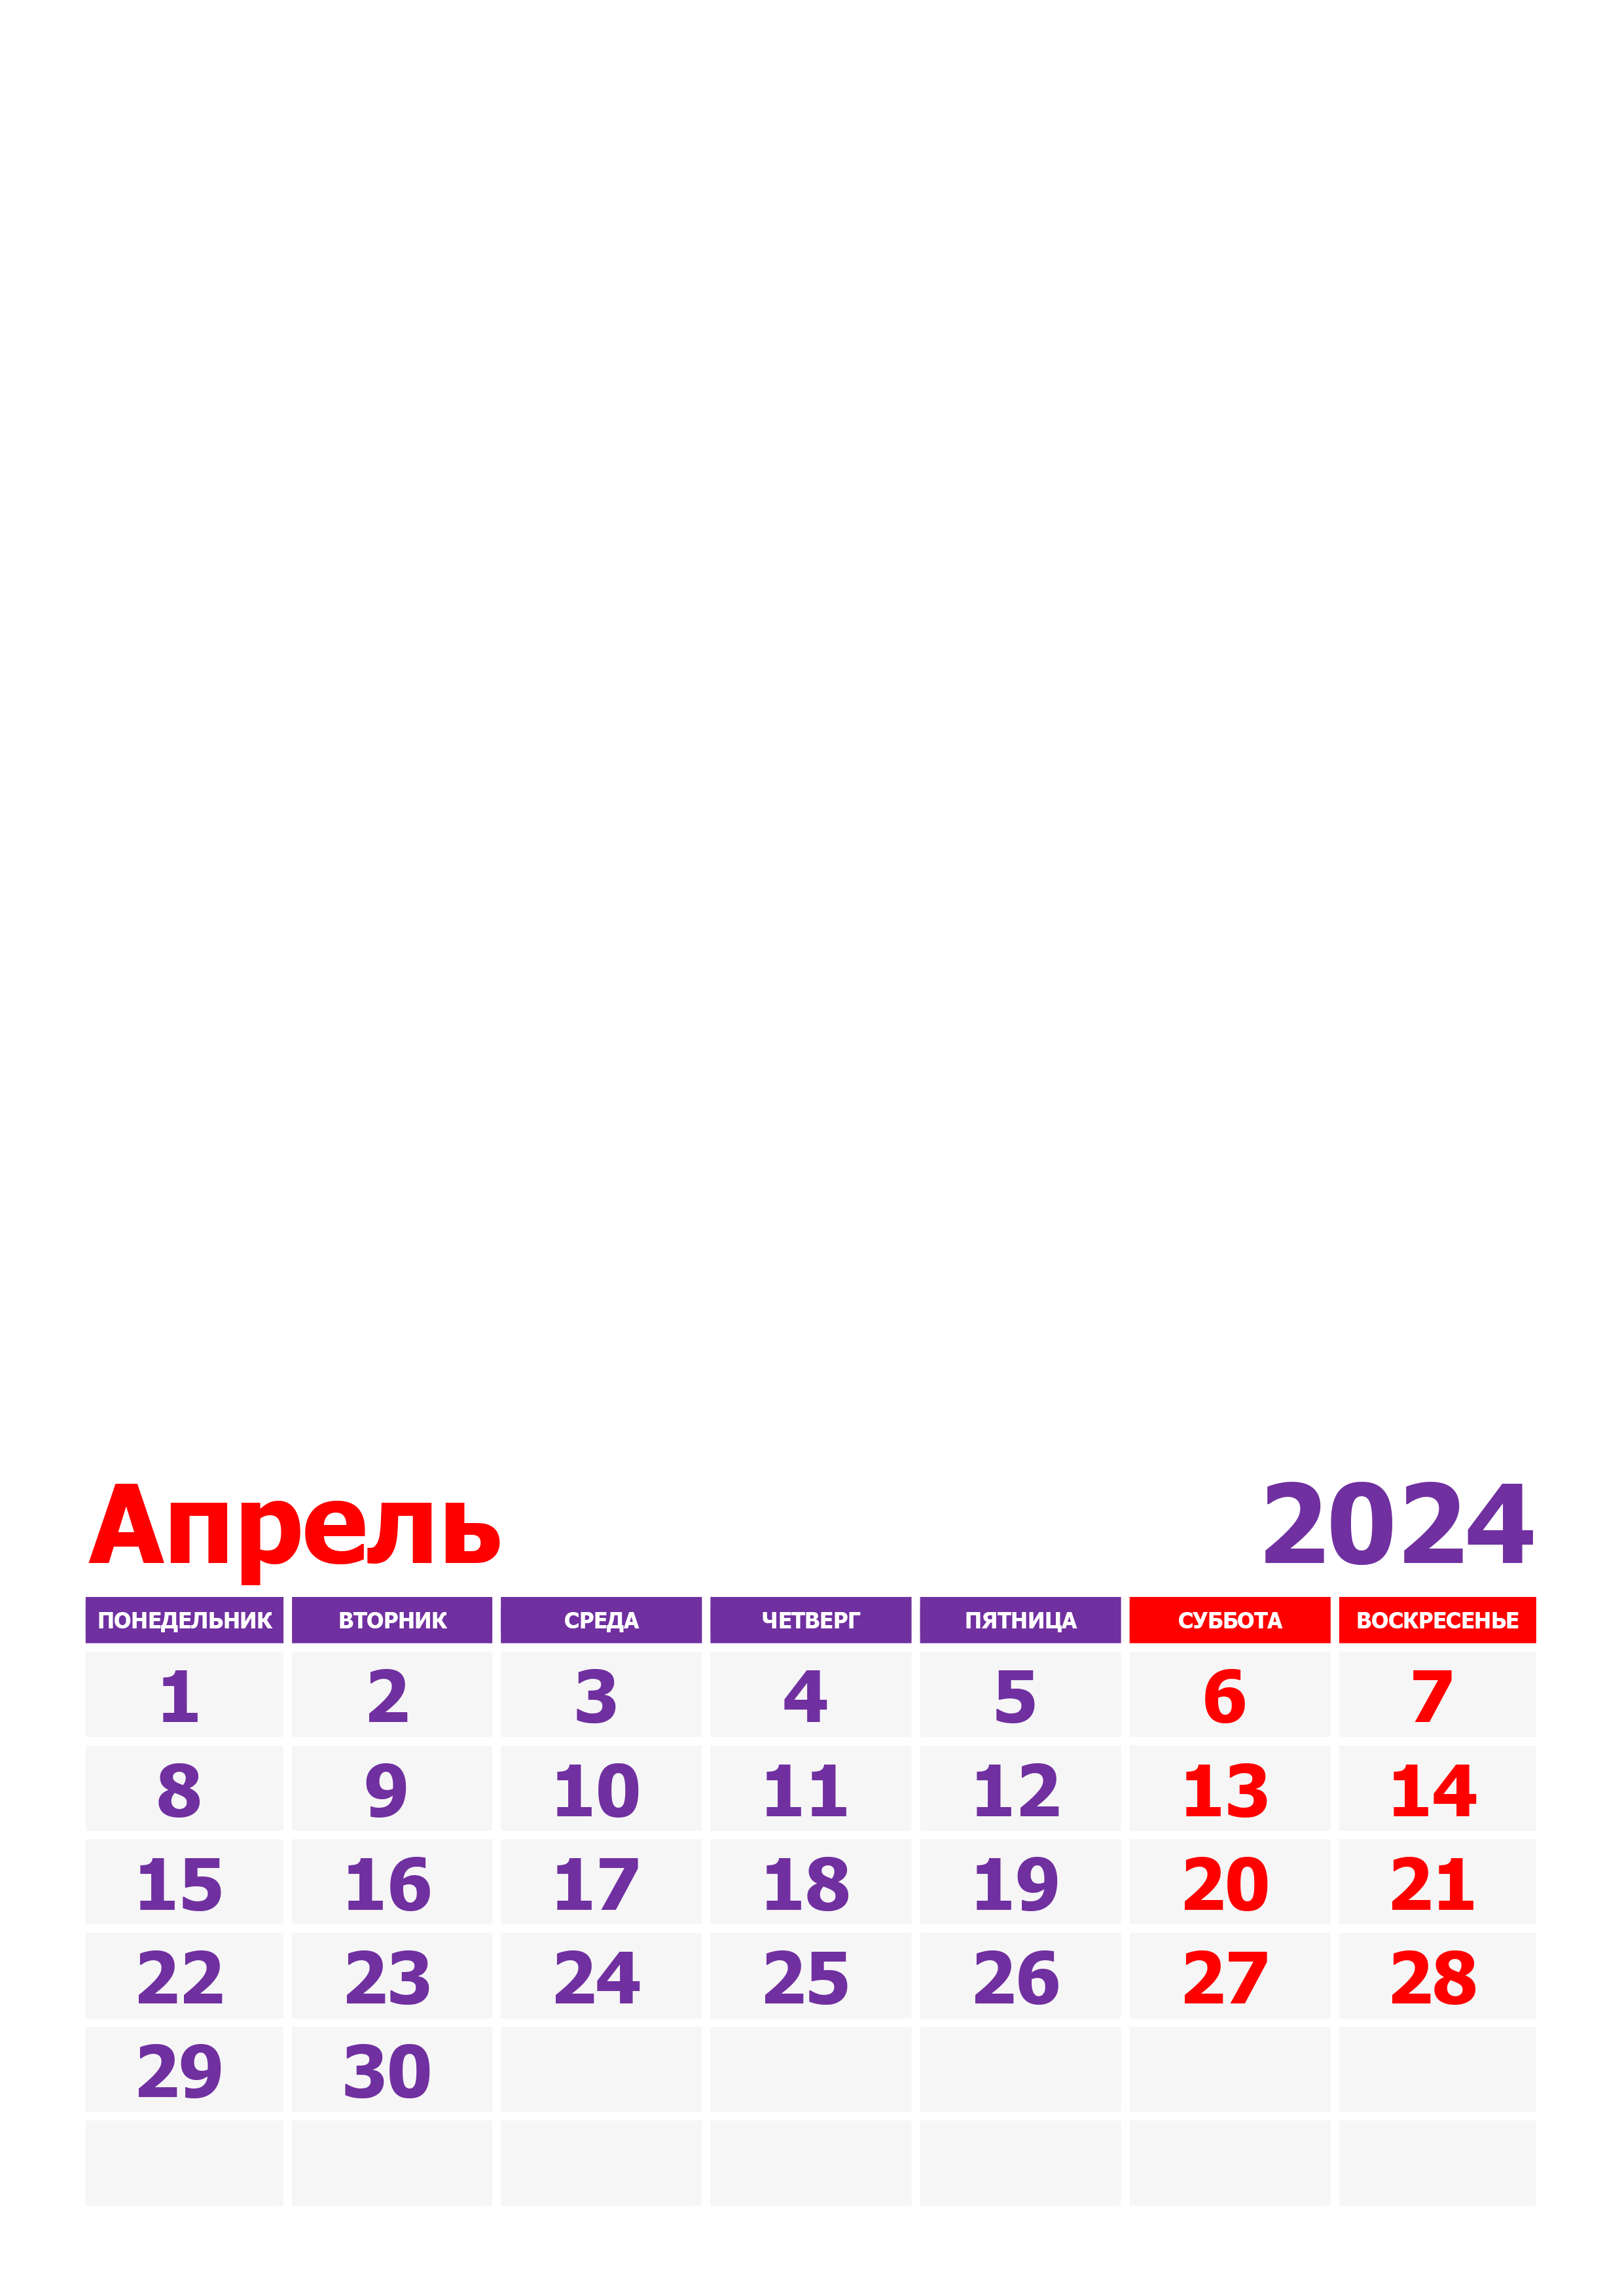 Неблагоприятные дни в апреле 2024 г. Апрель 2024. Аперь 2024. Календарь апрель 2024. Календарь на апрель 2024 года.